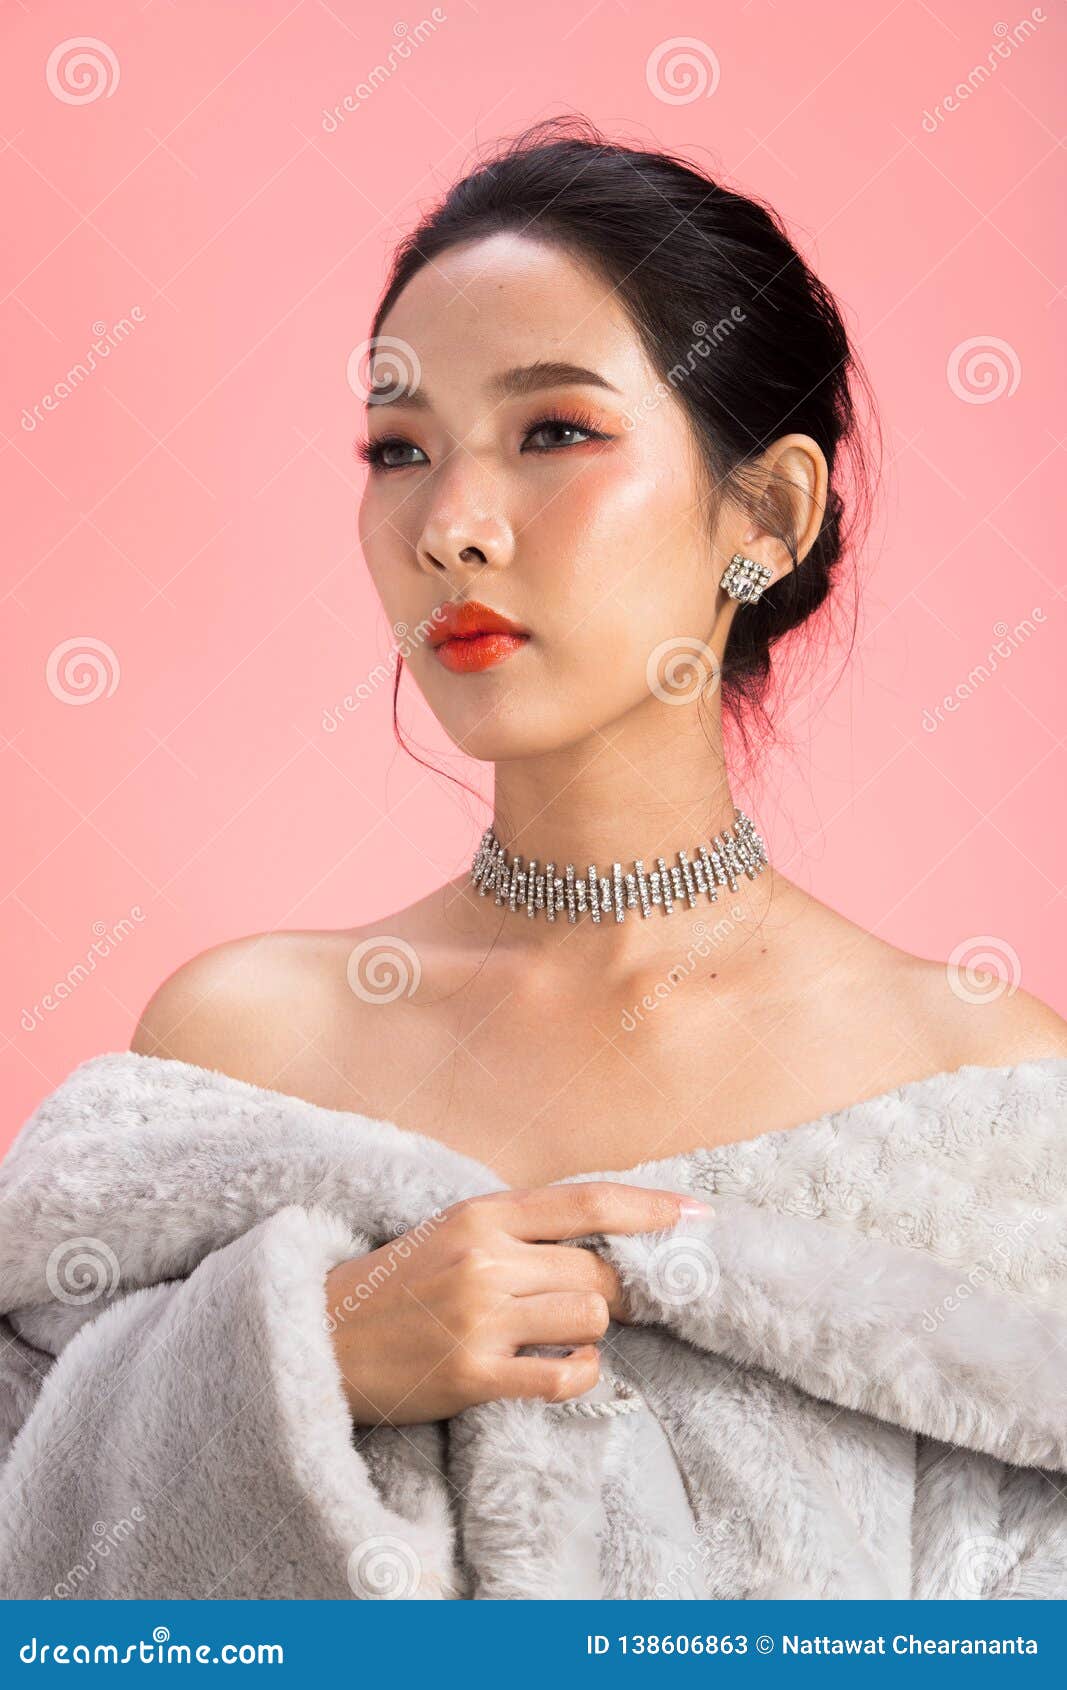 Fashion Asian Woman Thin Skin Black Hair Eyes Pink Stock Image Image Of Model Arrogant 138606863